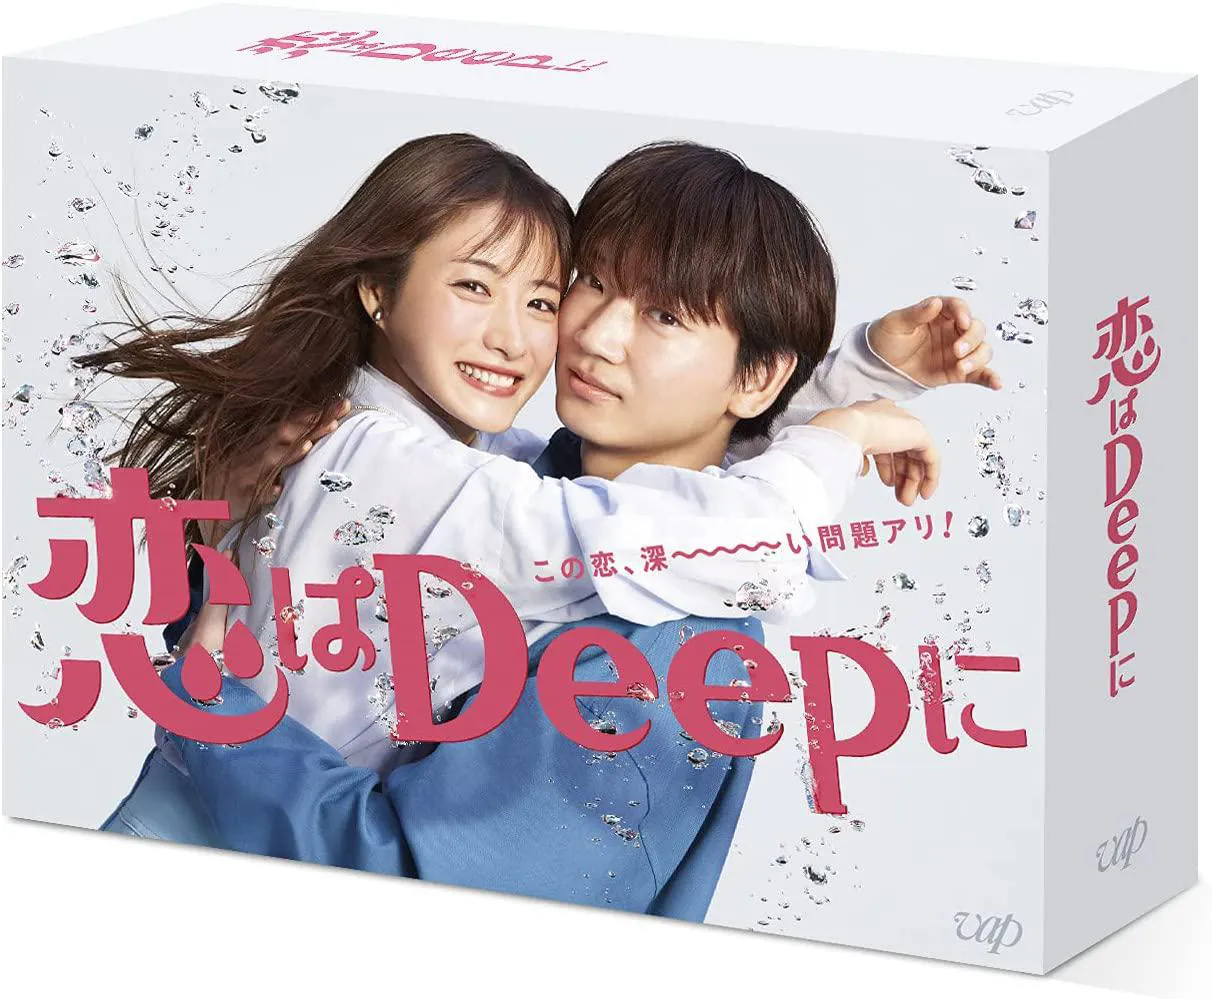 10 「恋はDeepに」Blu-ray BOX〔番組特製オリジナルコップ付き〕